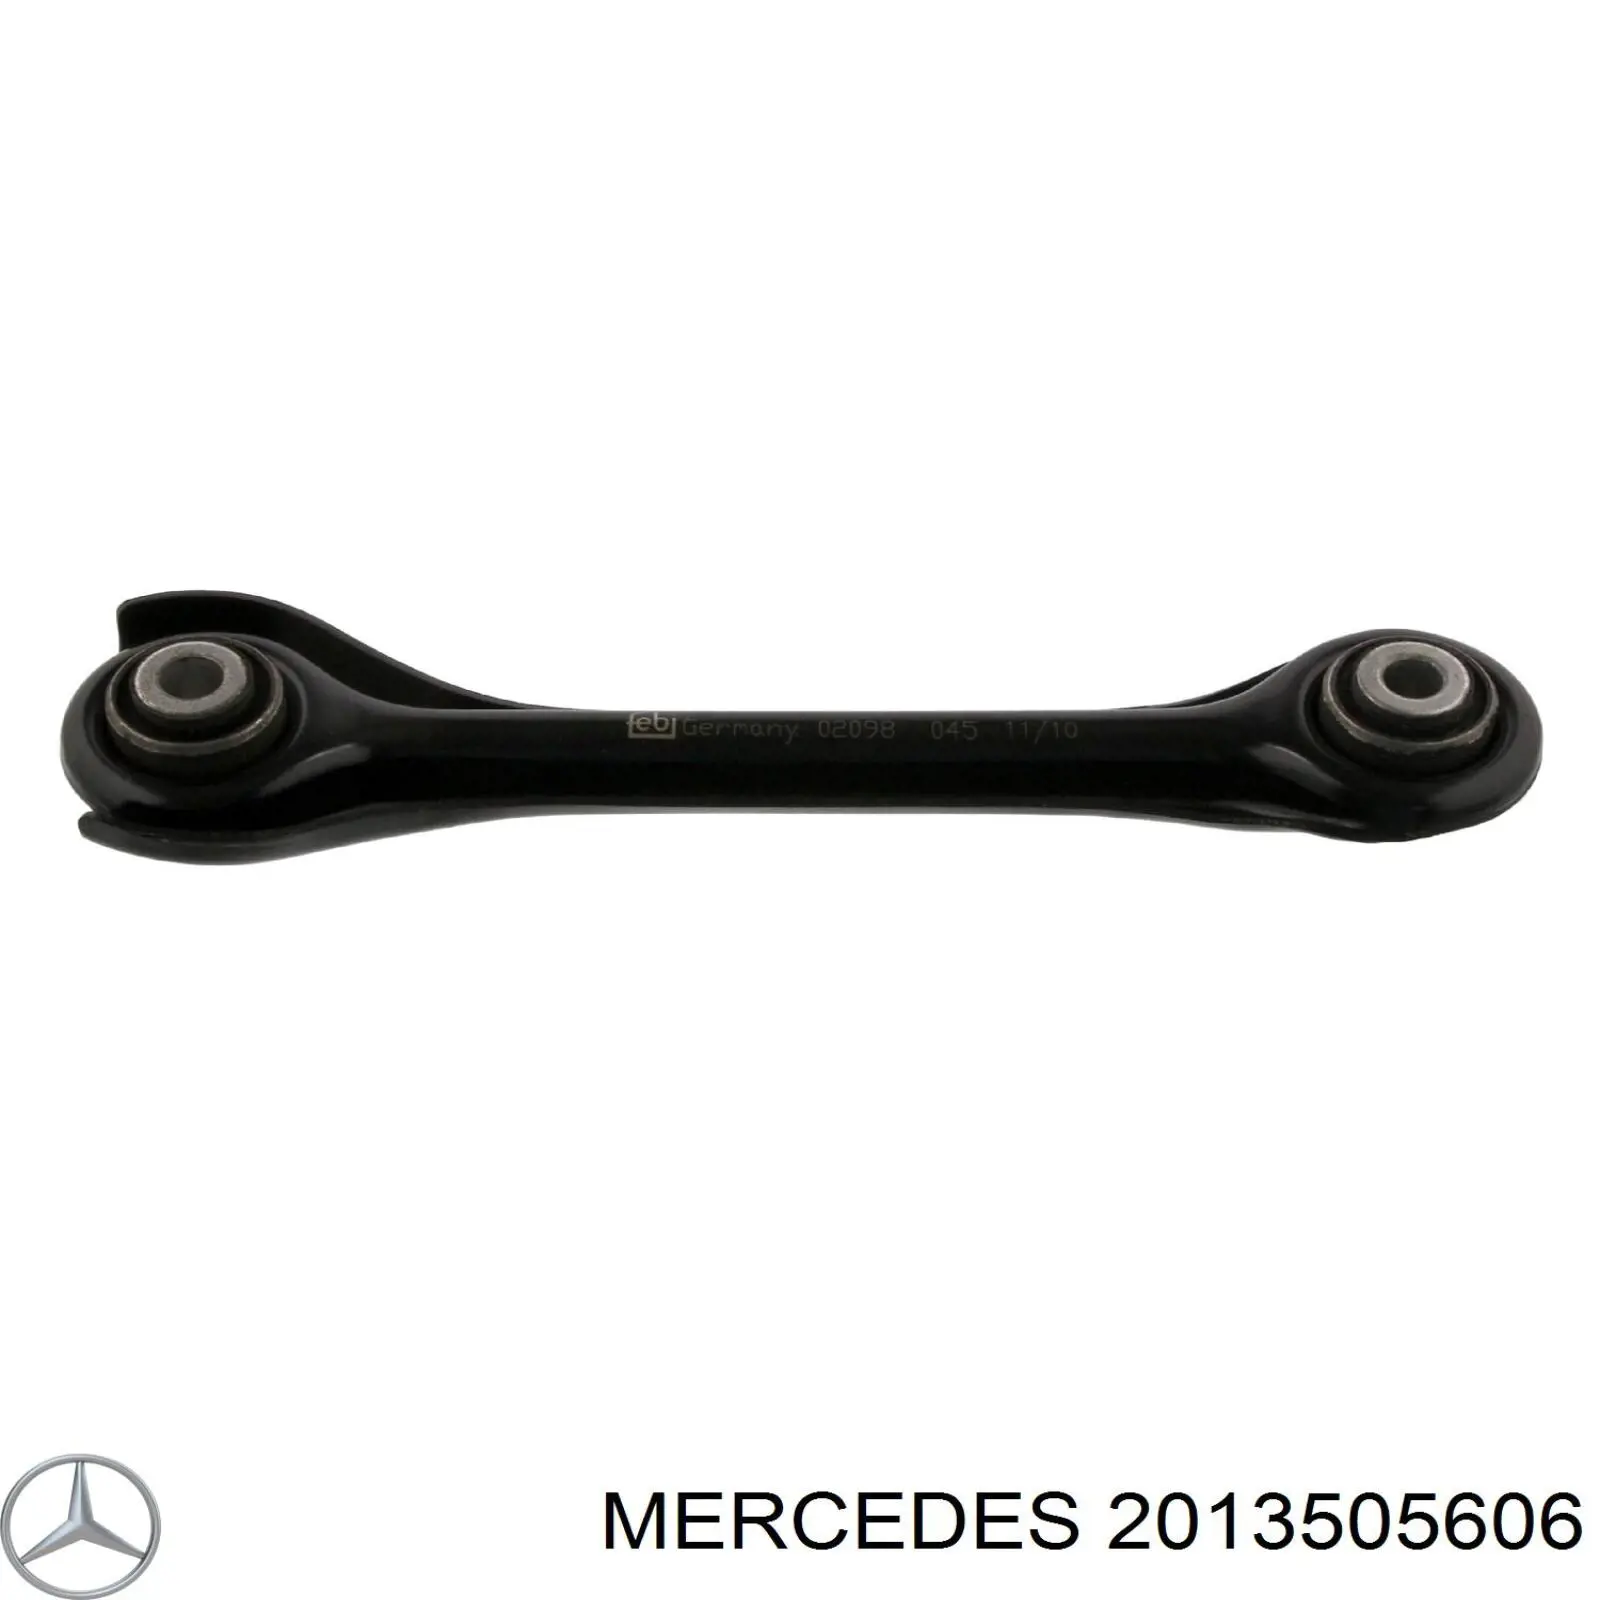 2013505606 Mercedes важіль задньої підвіски верхній, лівий/правий